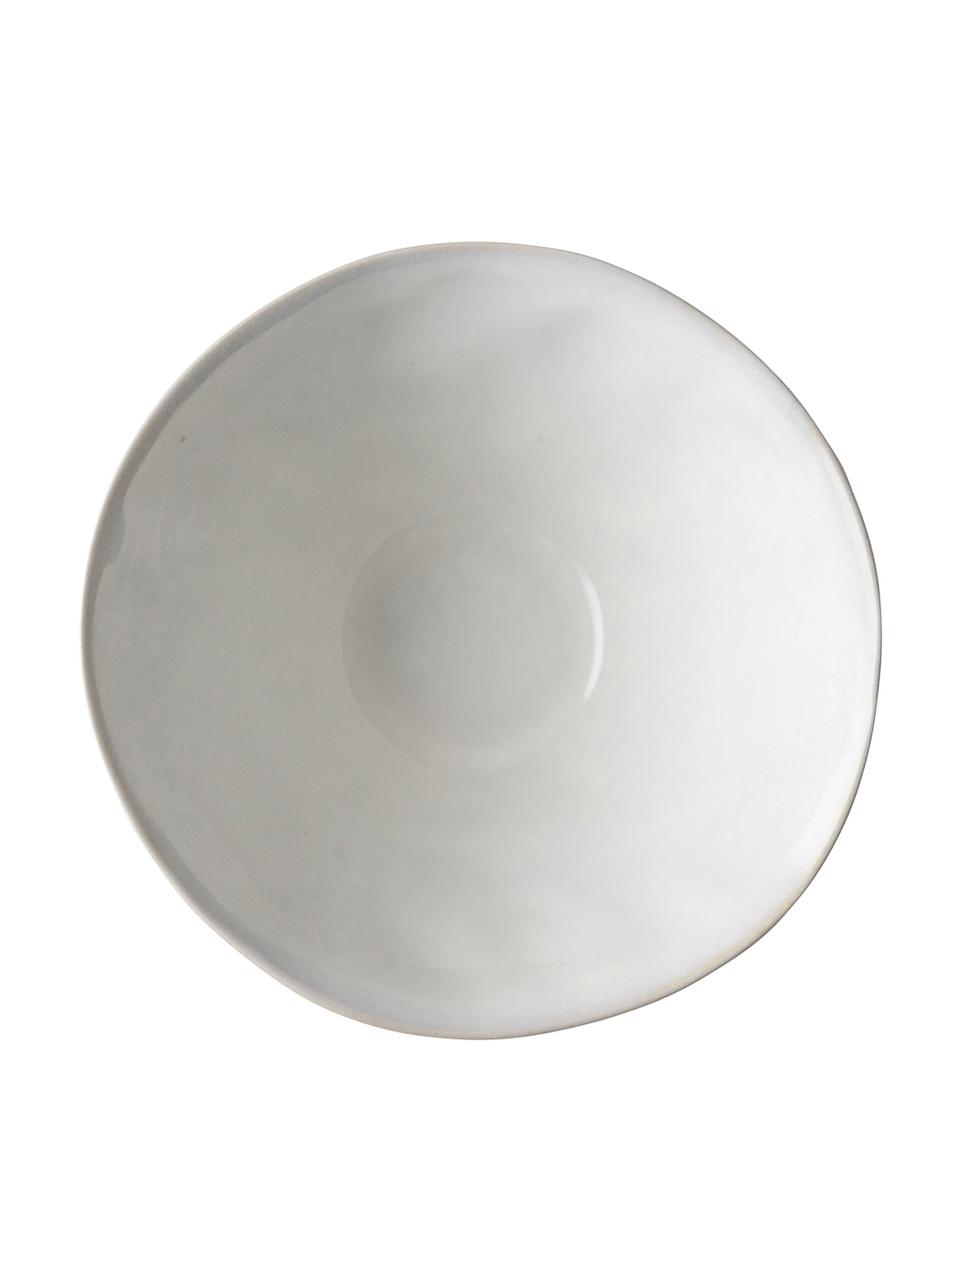 Schalen White Organic aus Steingut in Weiß, 4 Stück, Steingut, Weiß, Ø 14 x H 7 cm